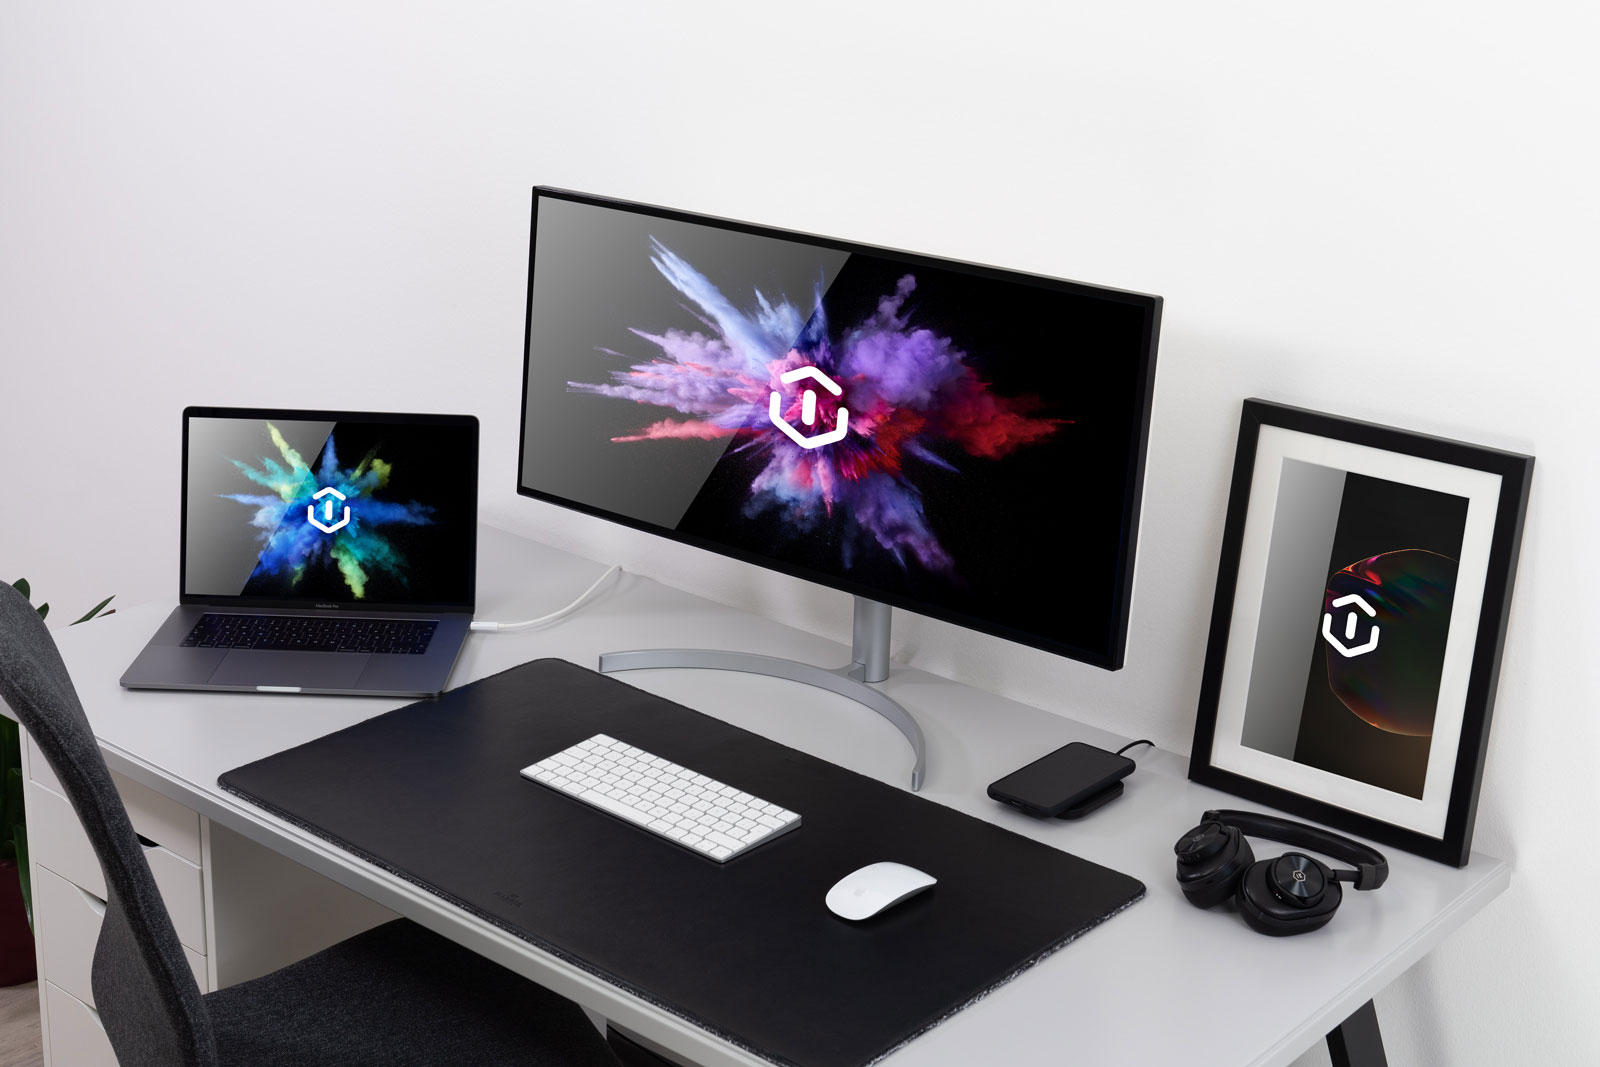 简约办公超宽屏幕显示器MacBook Pro和相框PSD样机模型